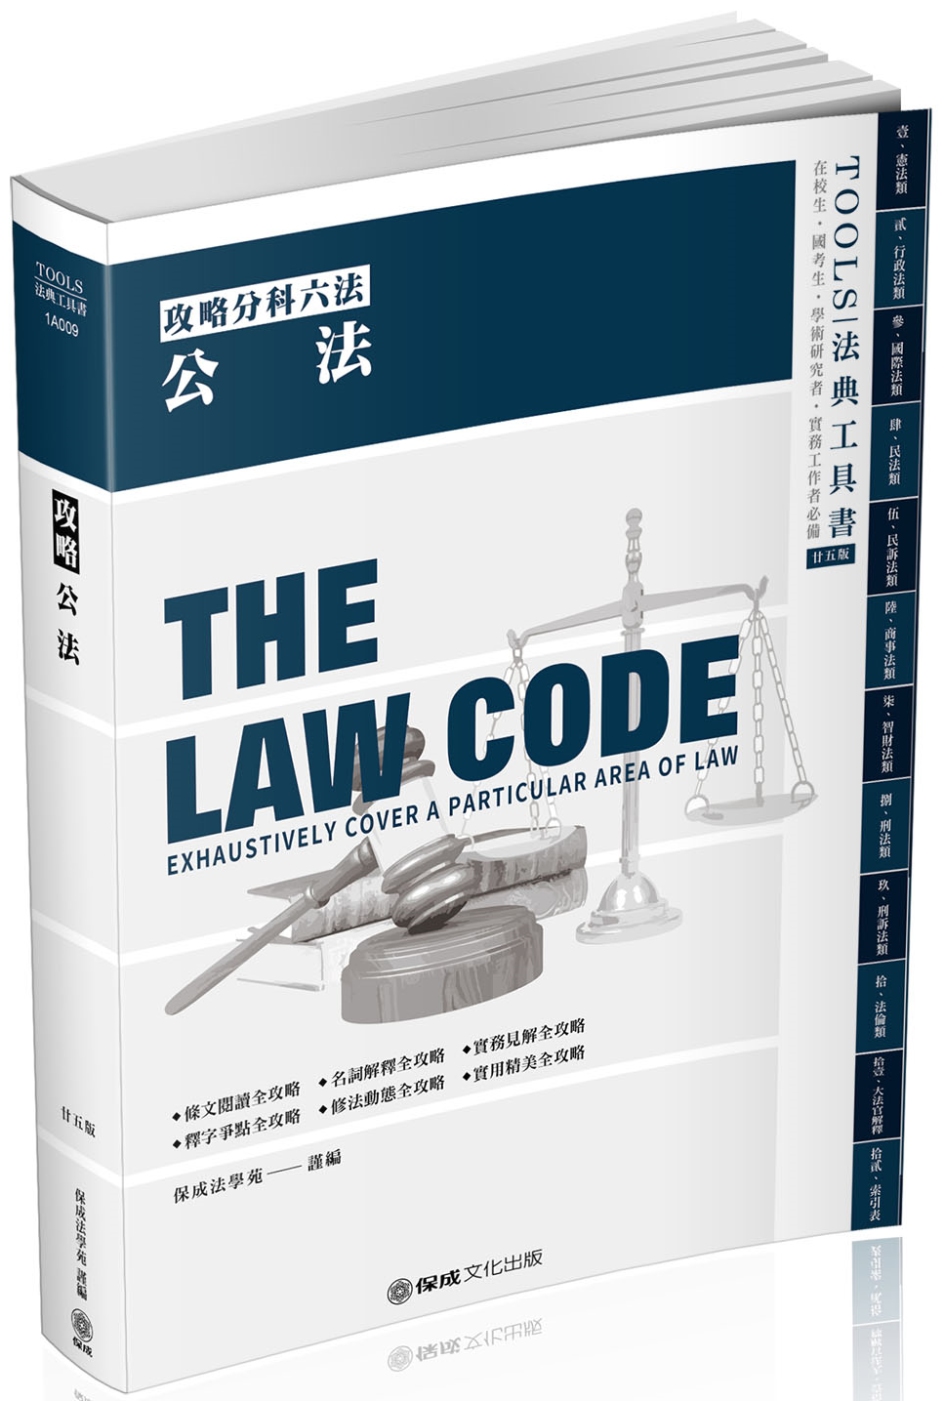 攻略公法：2021法律法典工具書(保成)（25版）